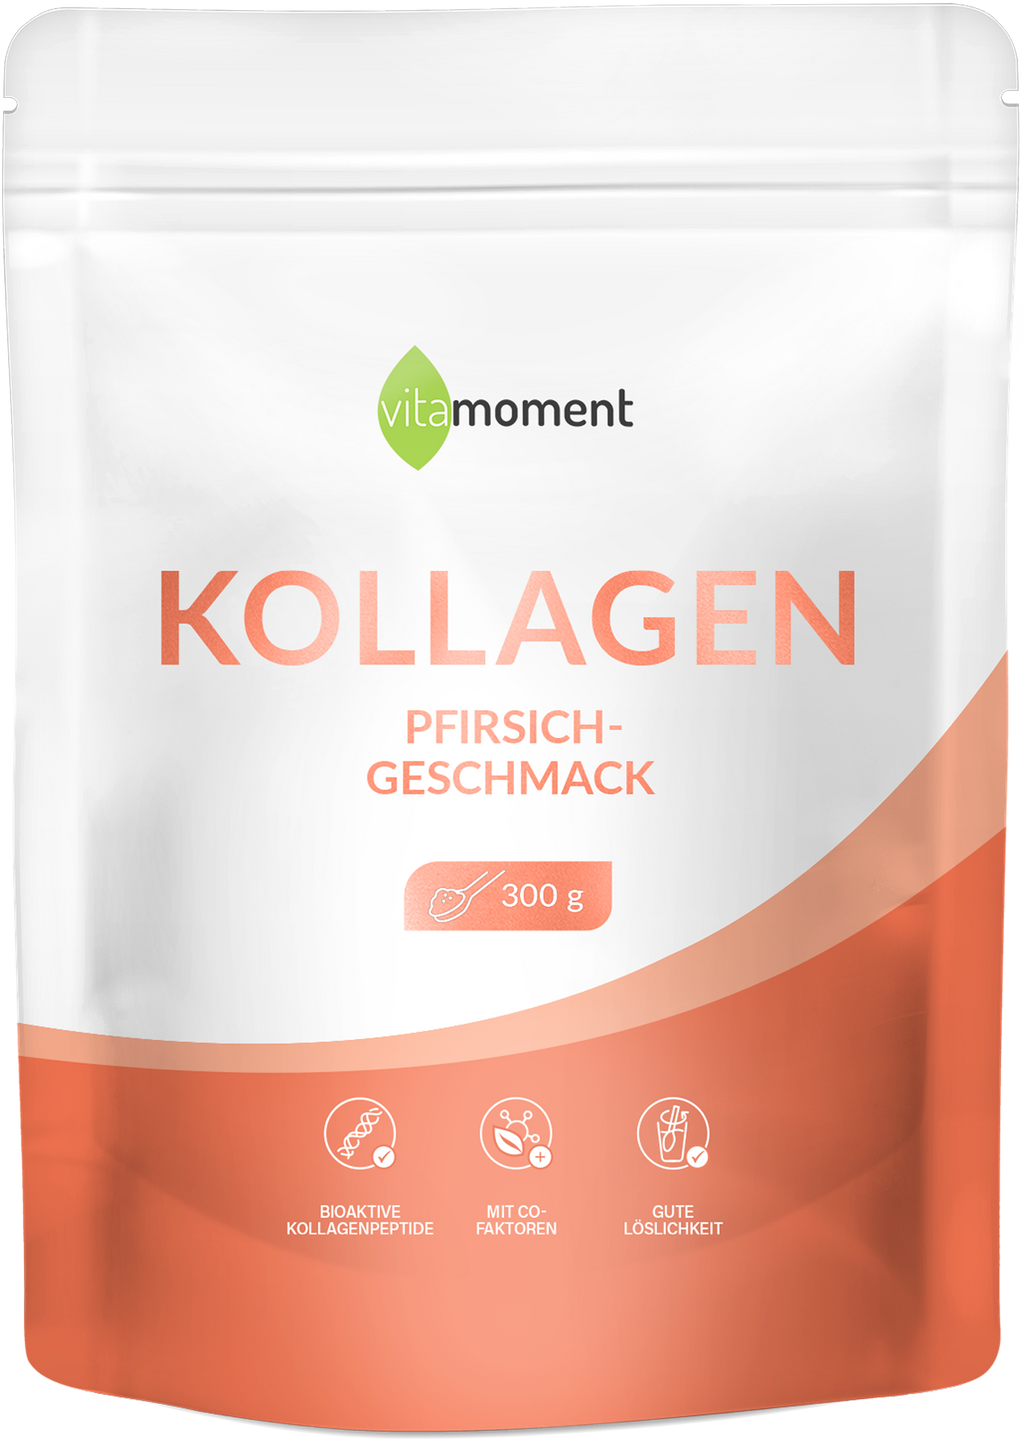 Kollagen - Pfirsich - VitaMoment Produkt